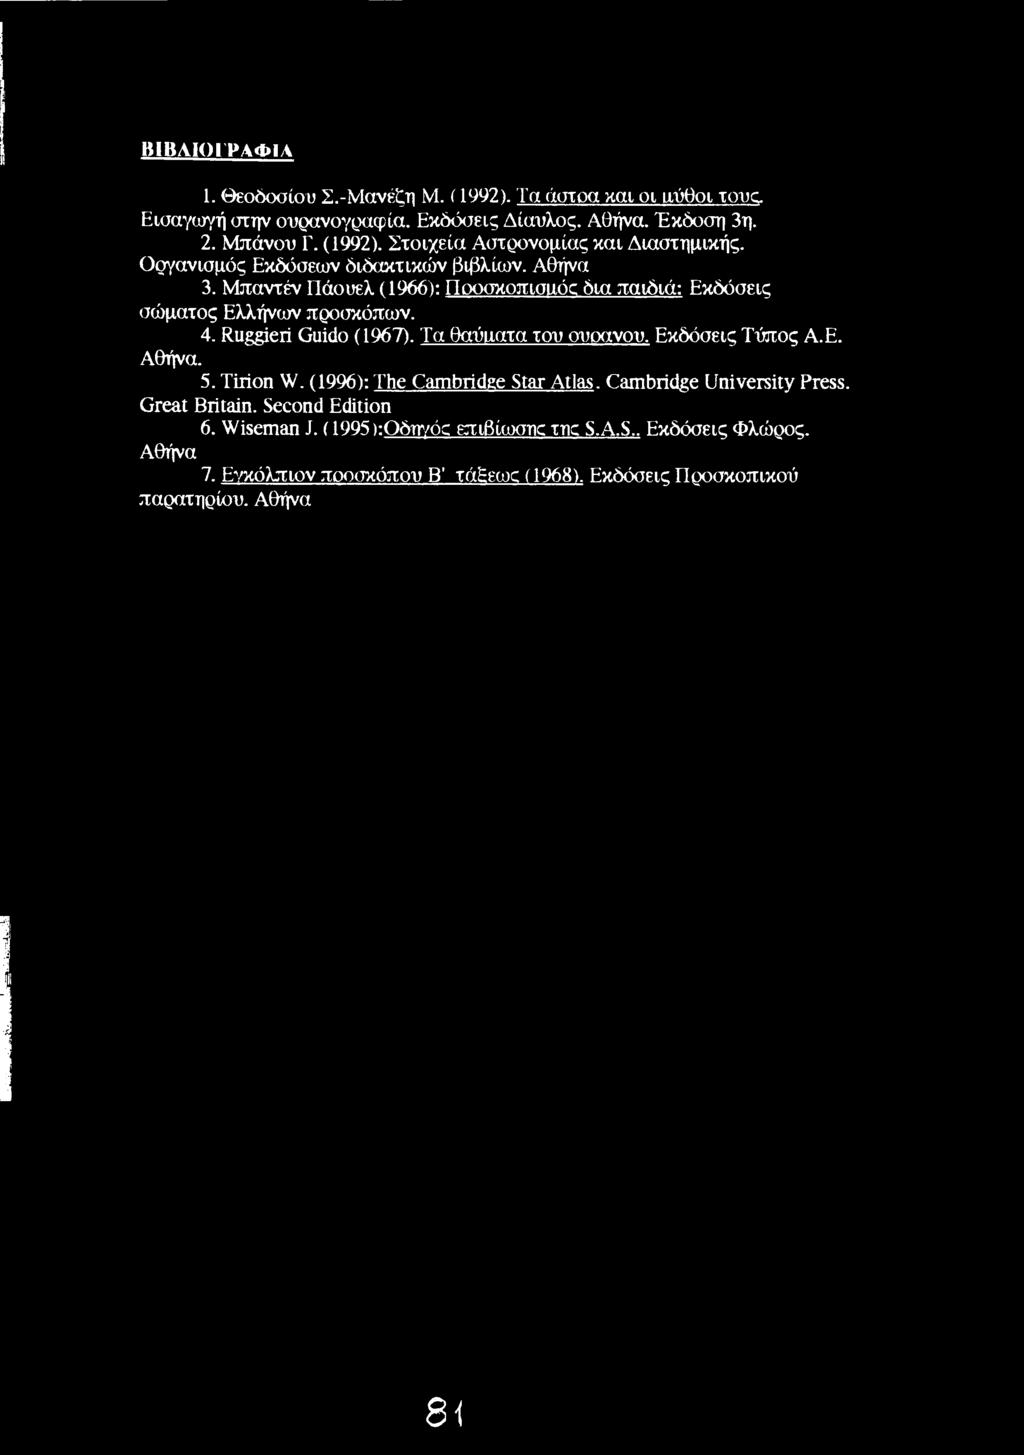 Τα θαύιιατα του ουσανου. Εκδόσεις Τόπος Α.Ε. Αθήνα. 5. Tirion W. (1996): The Cambridge Star Atlas. Cambridge University Press. Great Britain. Second Edition 6.